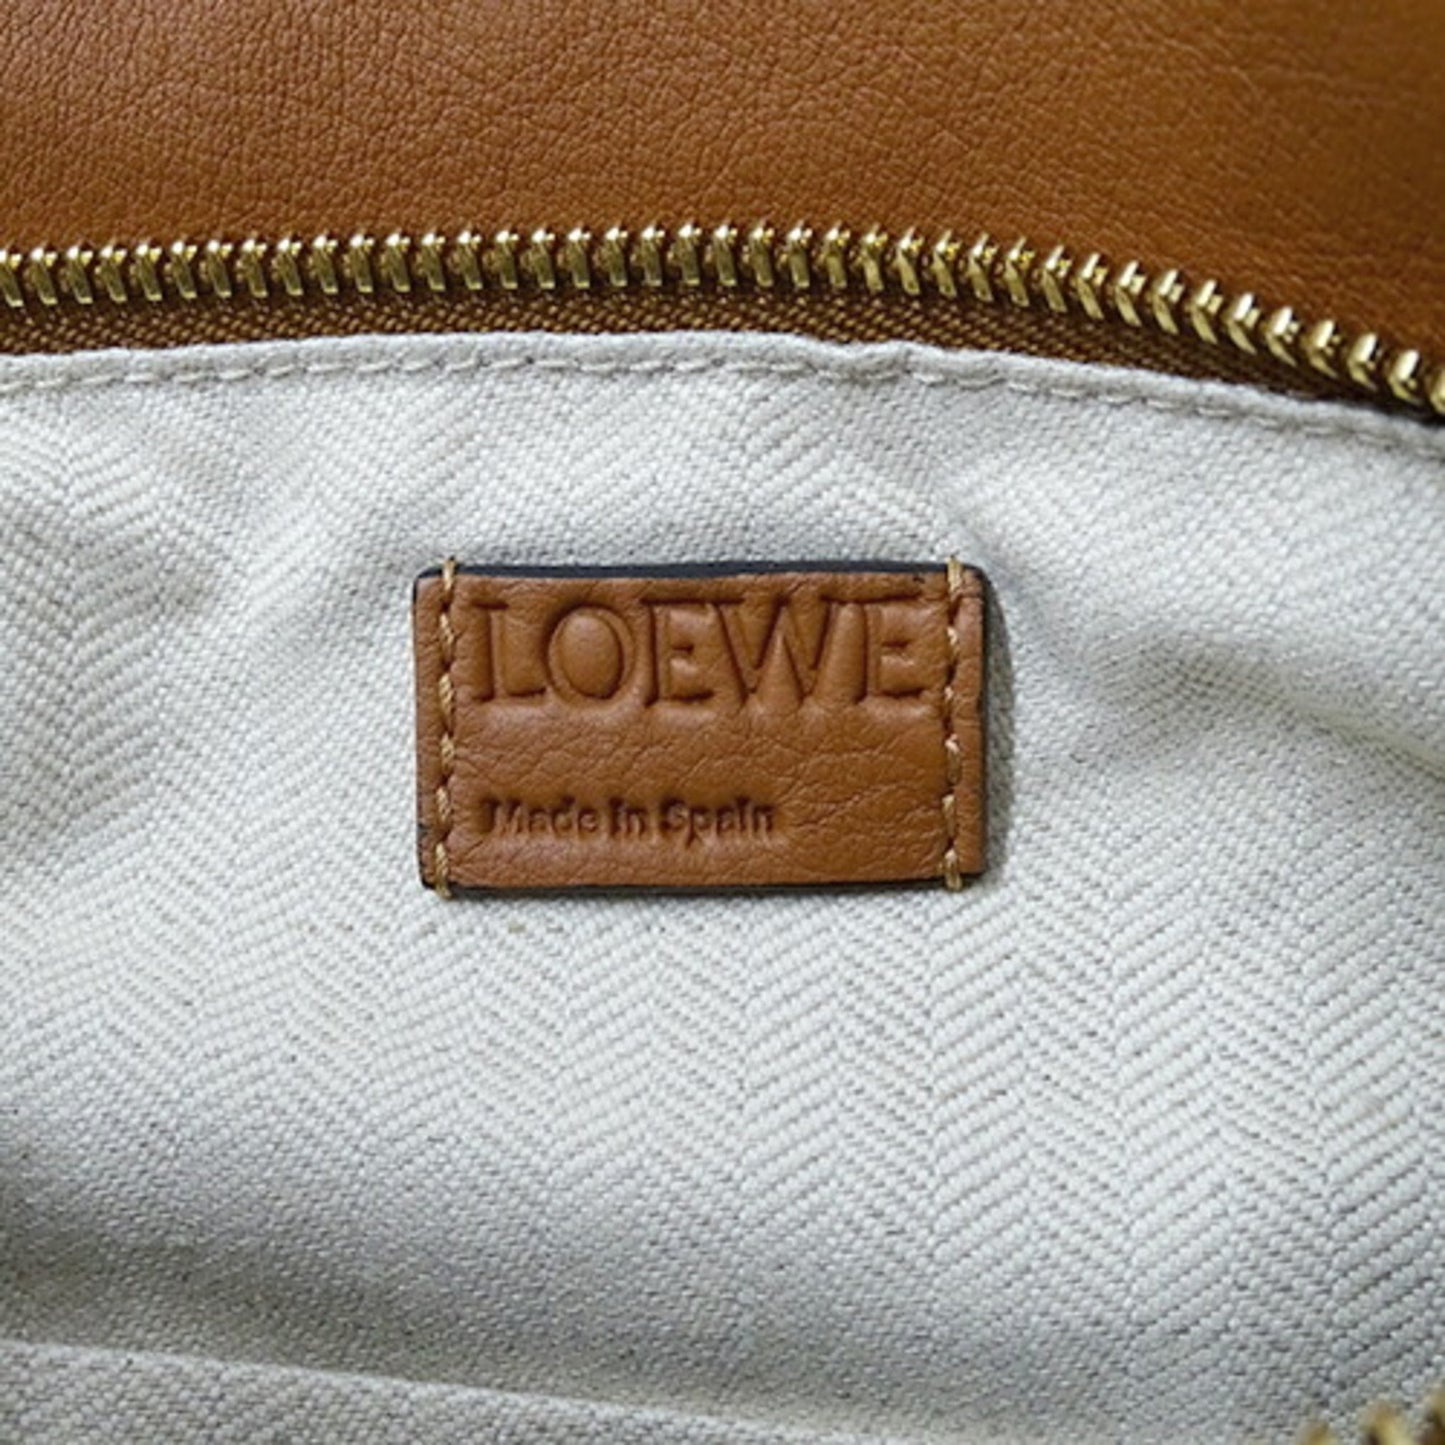 Loewe Women's Versatile Leather Handbag with Unique Design in Brown